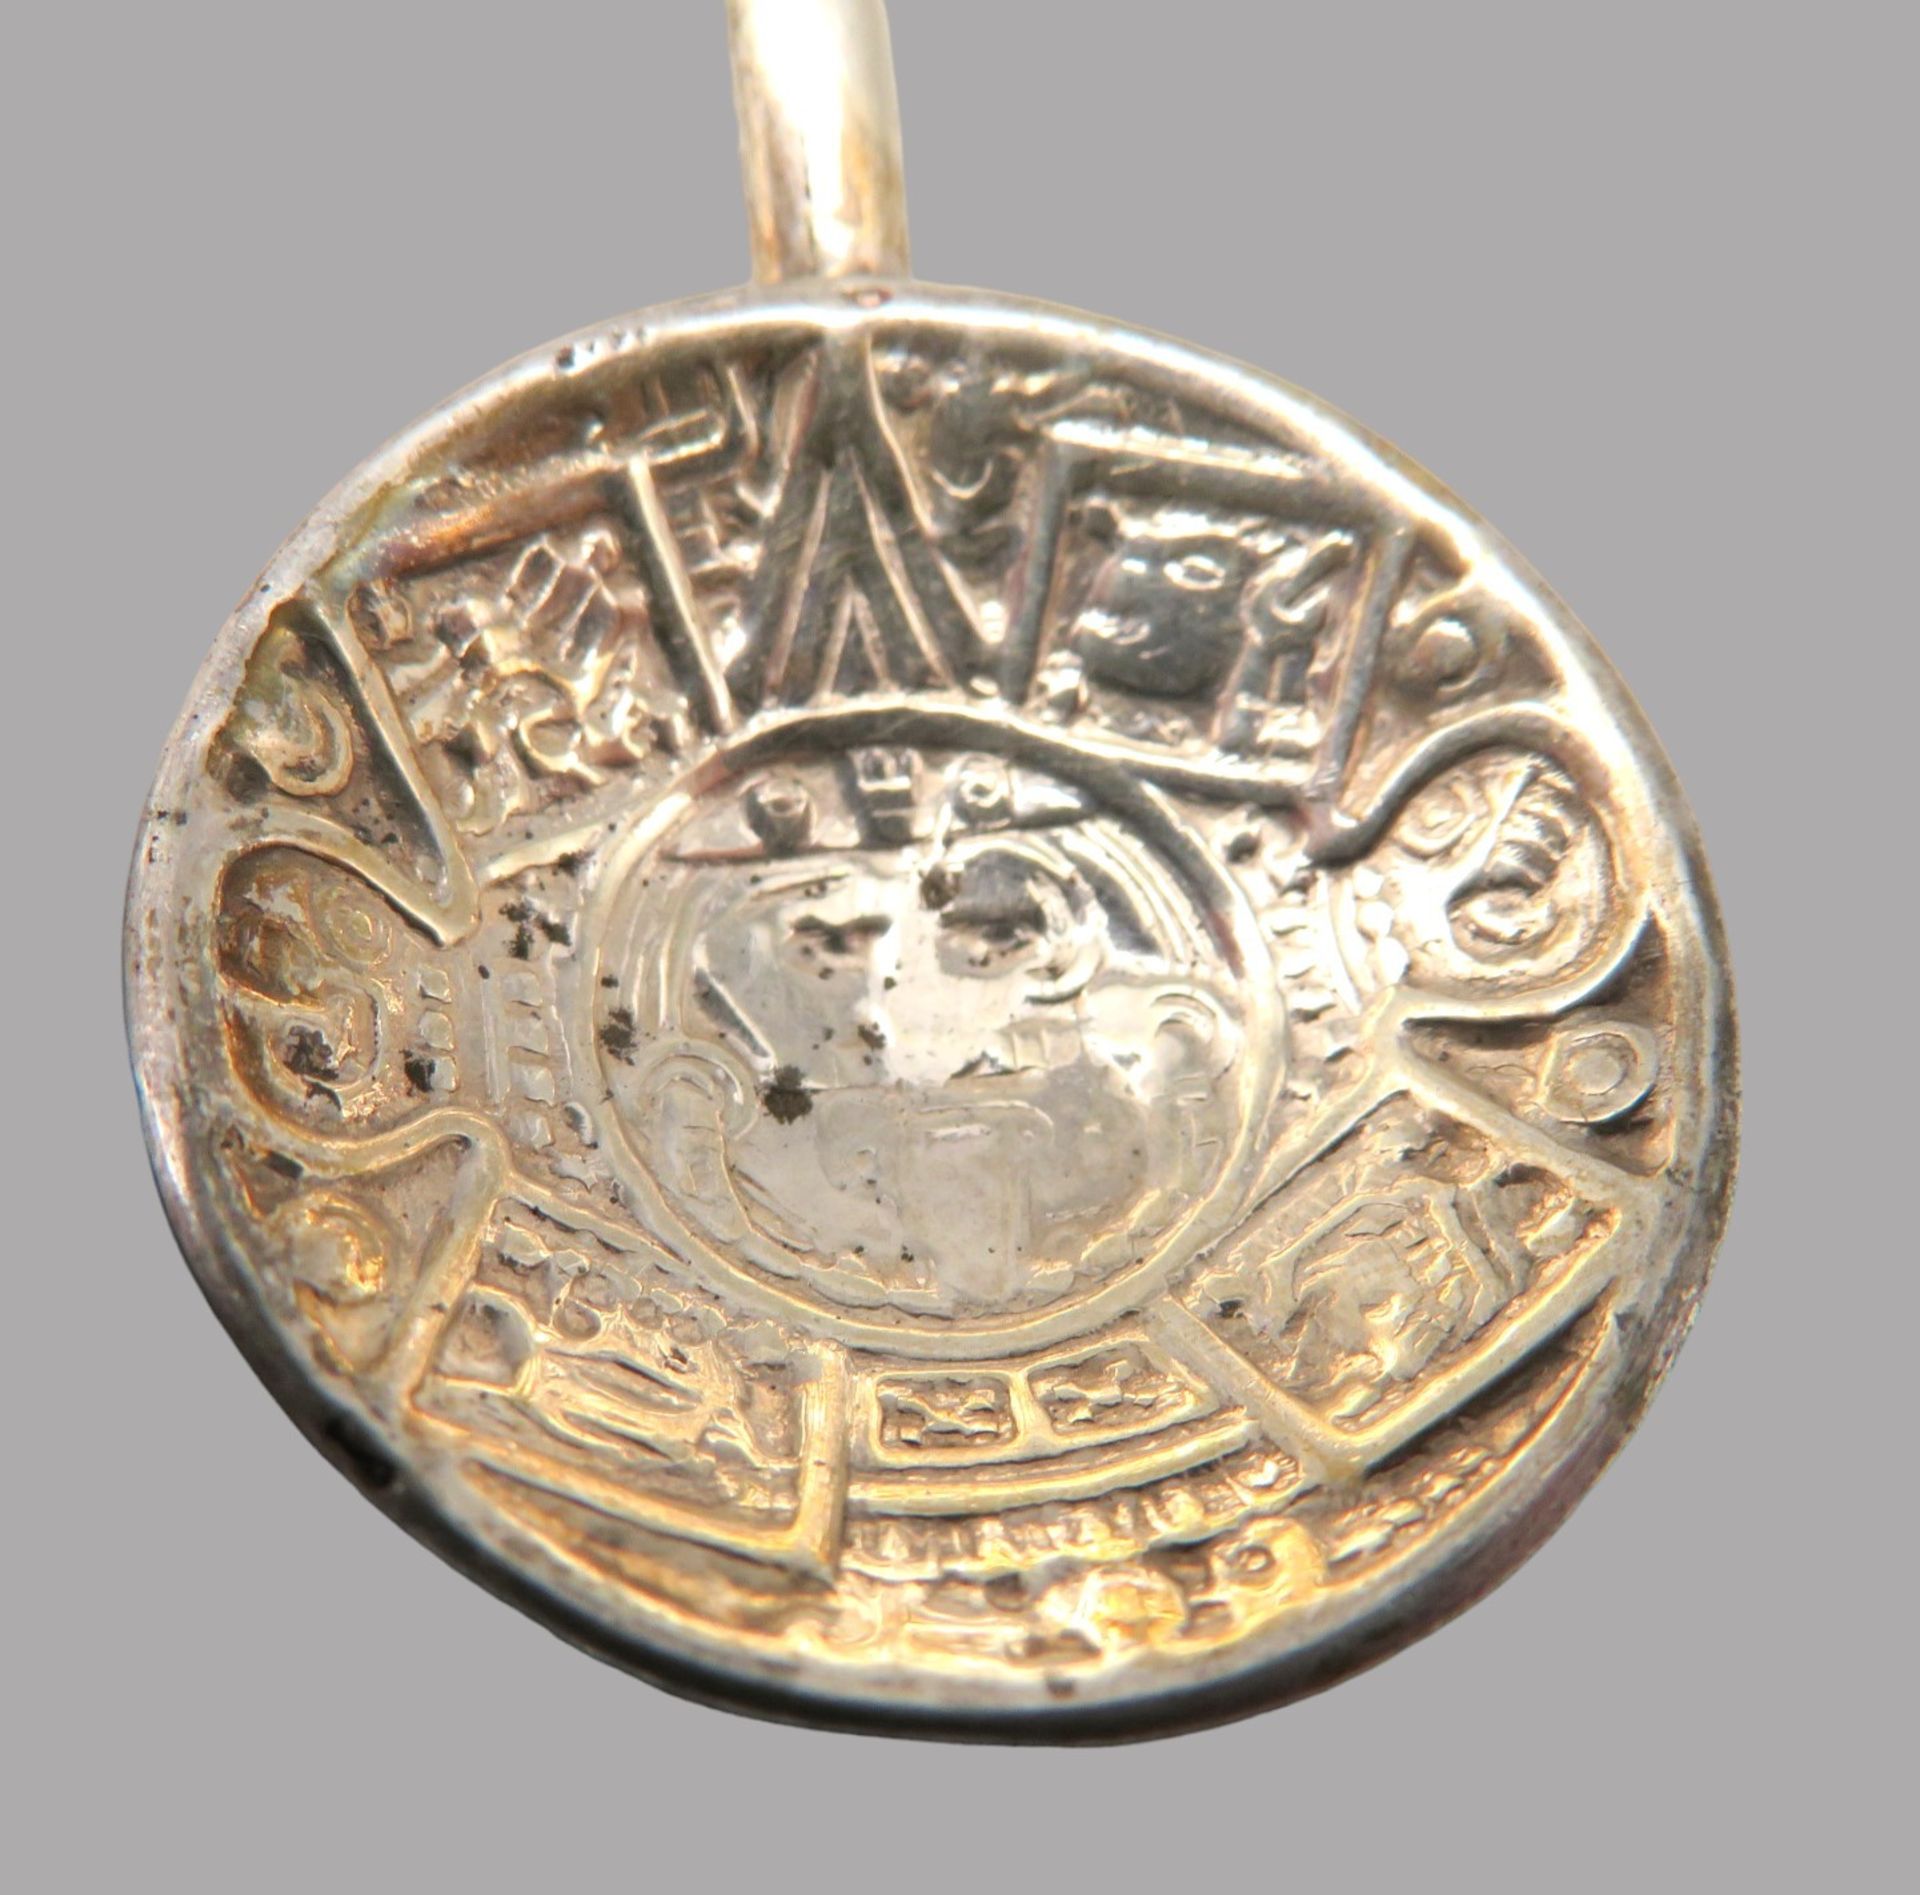 6 Longdrink-Löffel, Mexiko, Silber 925/000, punziert, 82 g, Gebrauchsspuren, l 21,5 cm. - Image 2 of 3